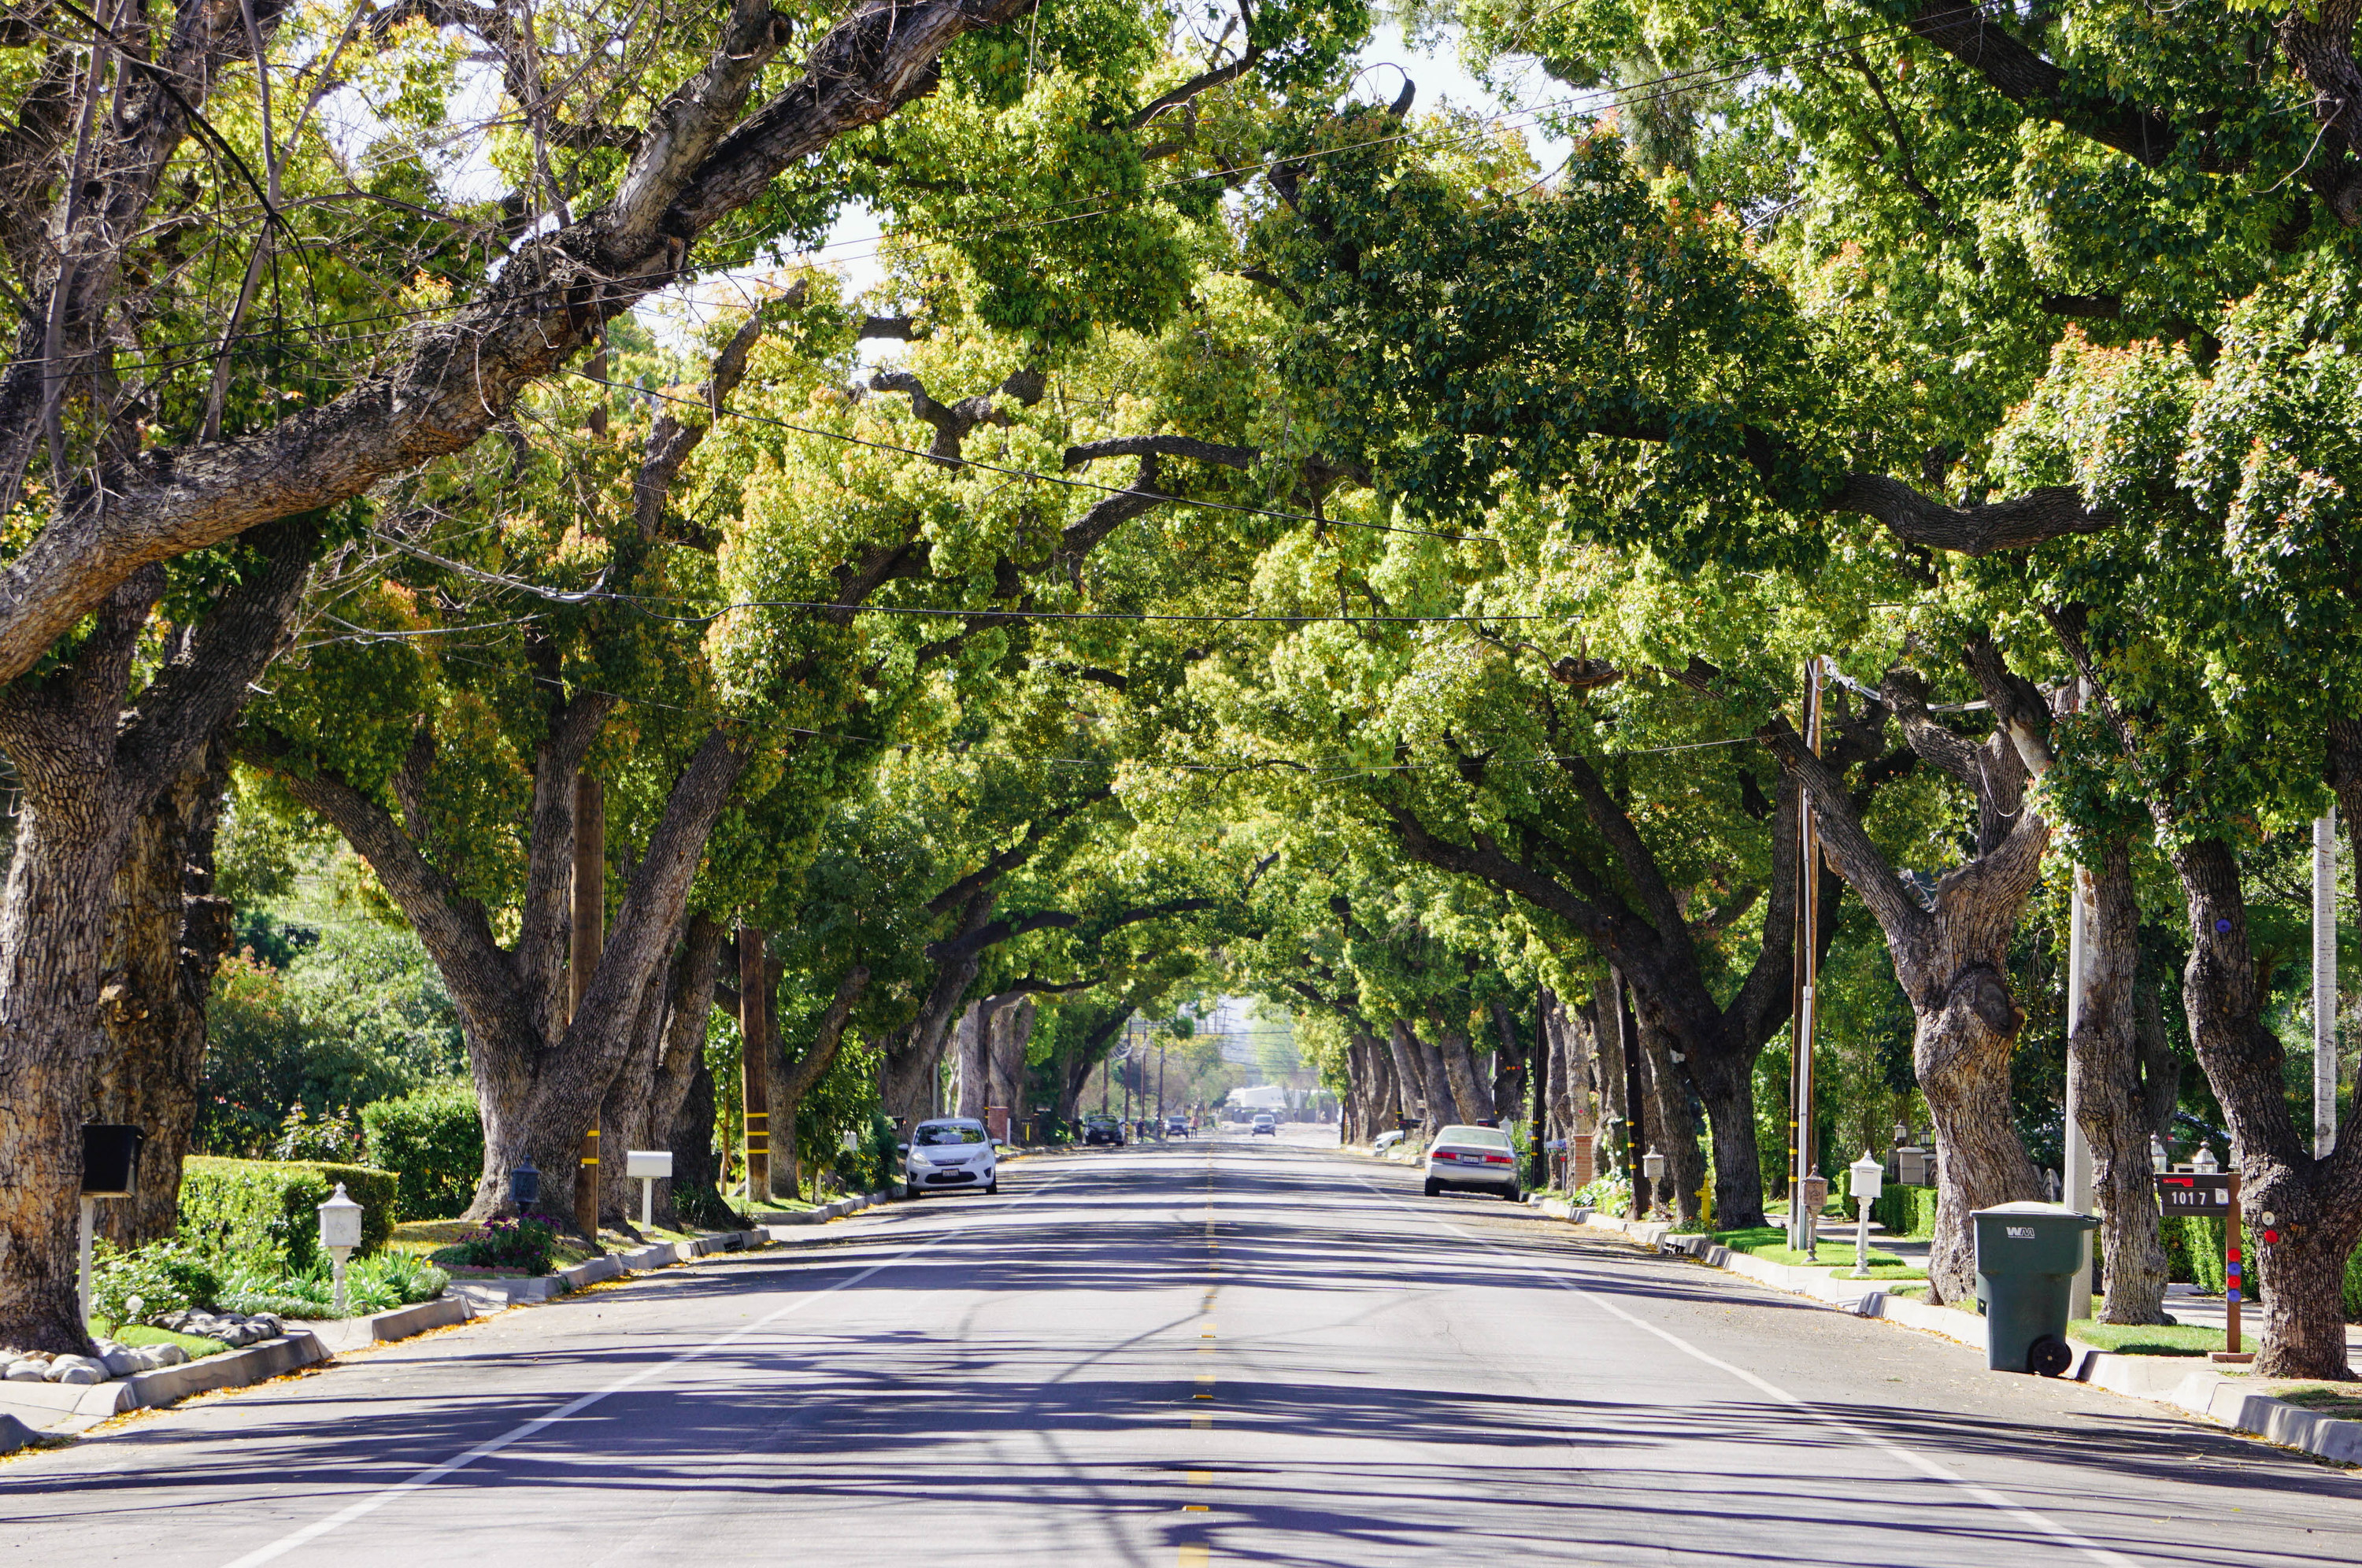 Oak trees alongside a main road